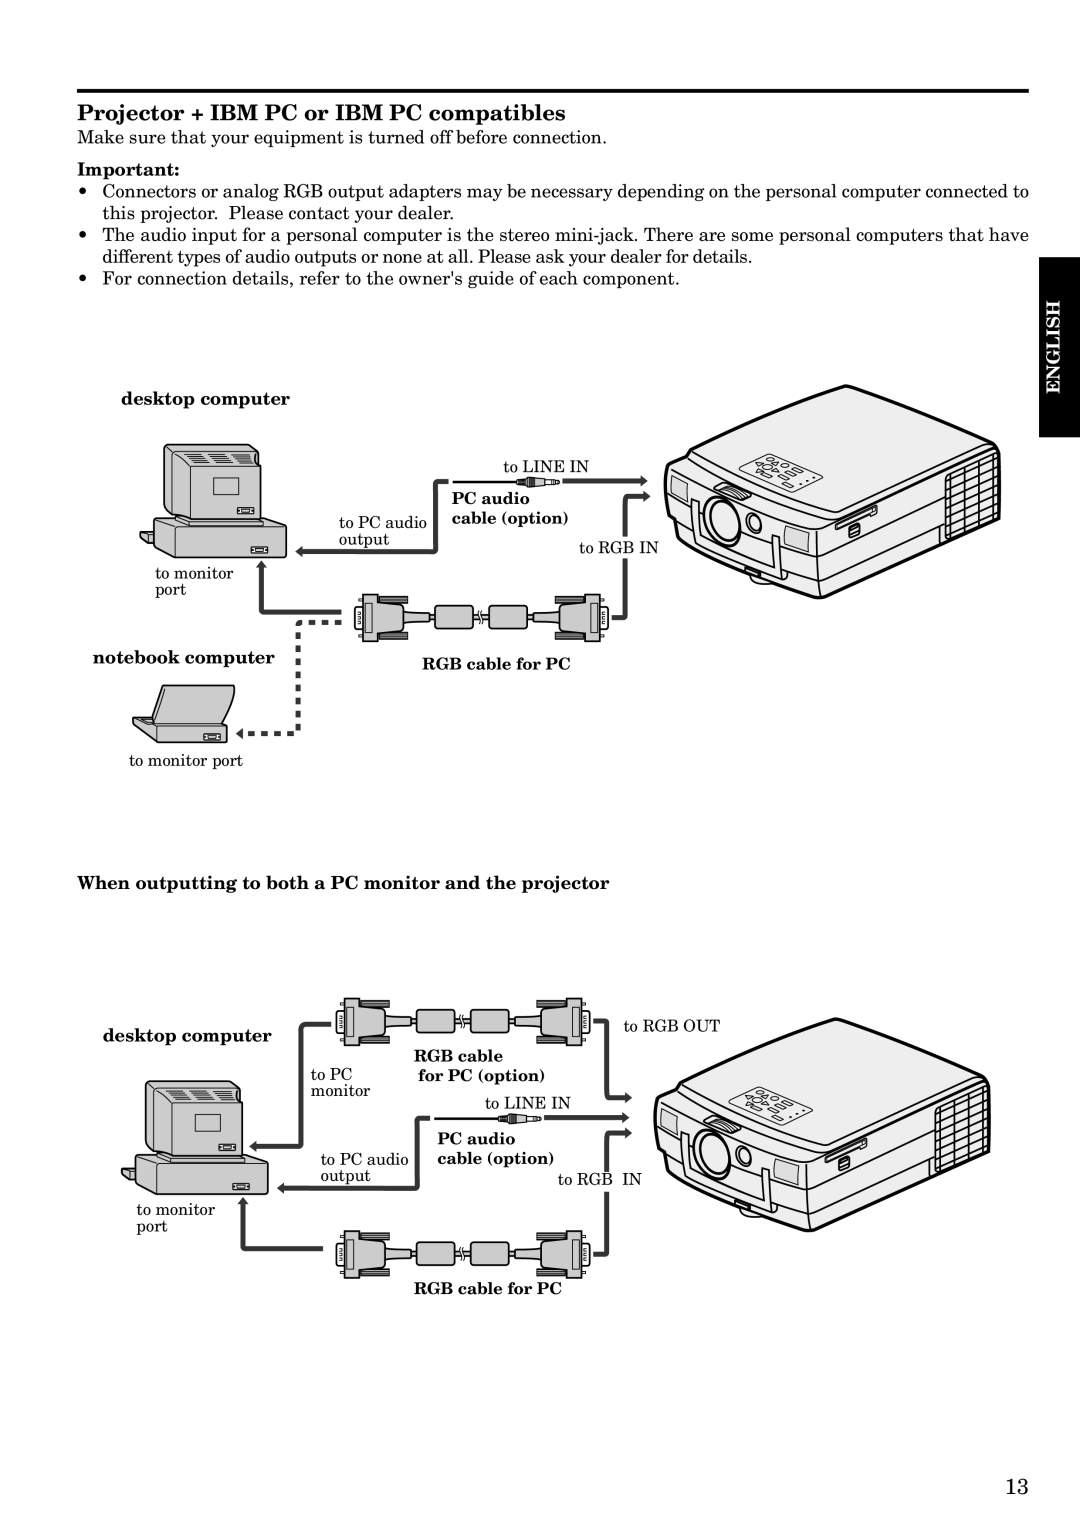 Mitsubishi Electronics LVP-S120A user manual Projector + IBM PC or IBM PC compatibles, Desktop computer 